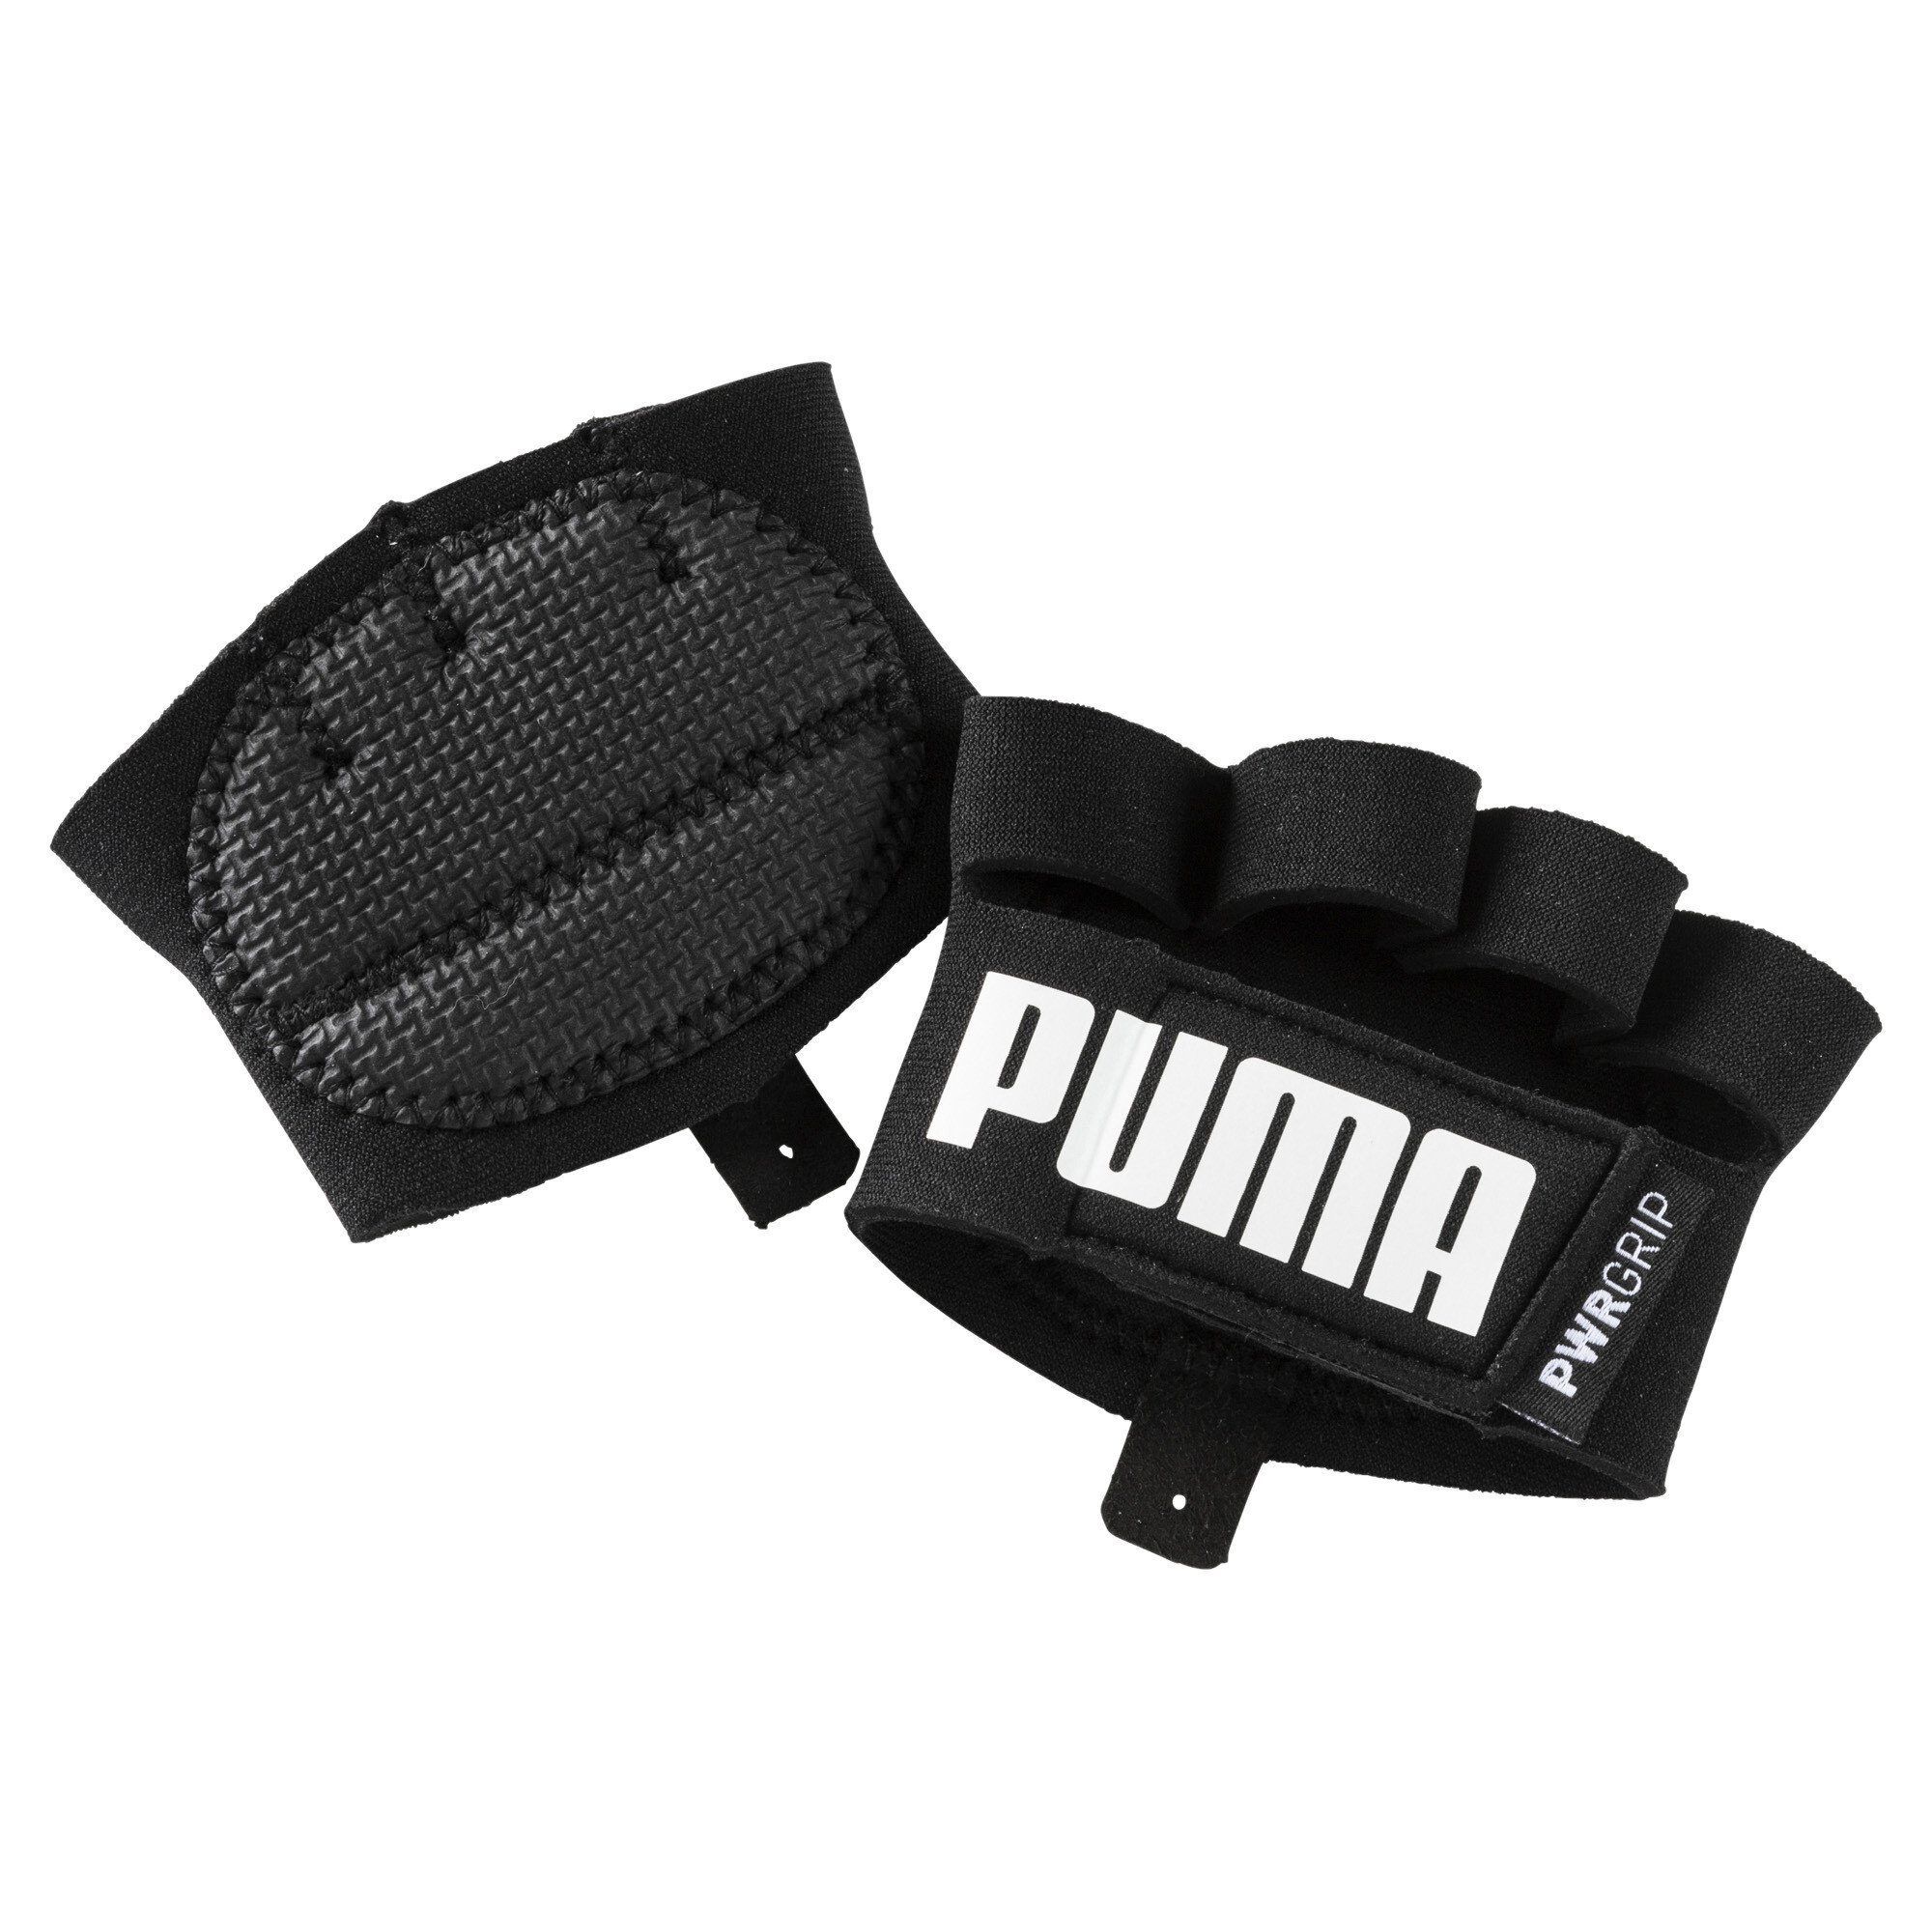 PUMA Trainingshandschuhe »Essential Training Grip Handschuhe« online kaufen  | OTTO